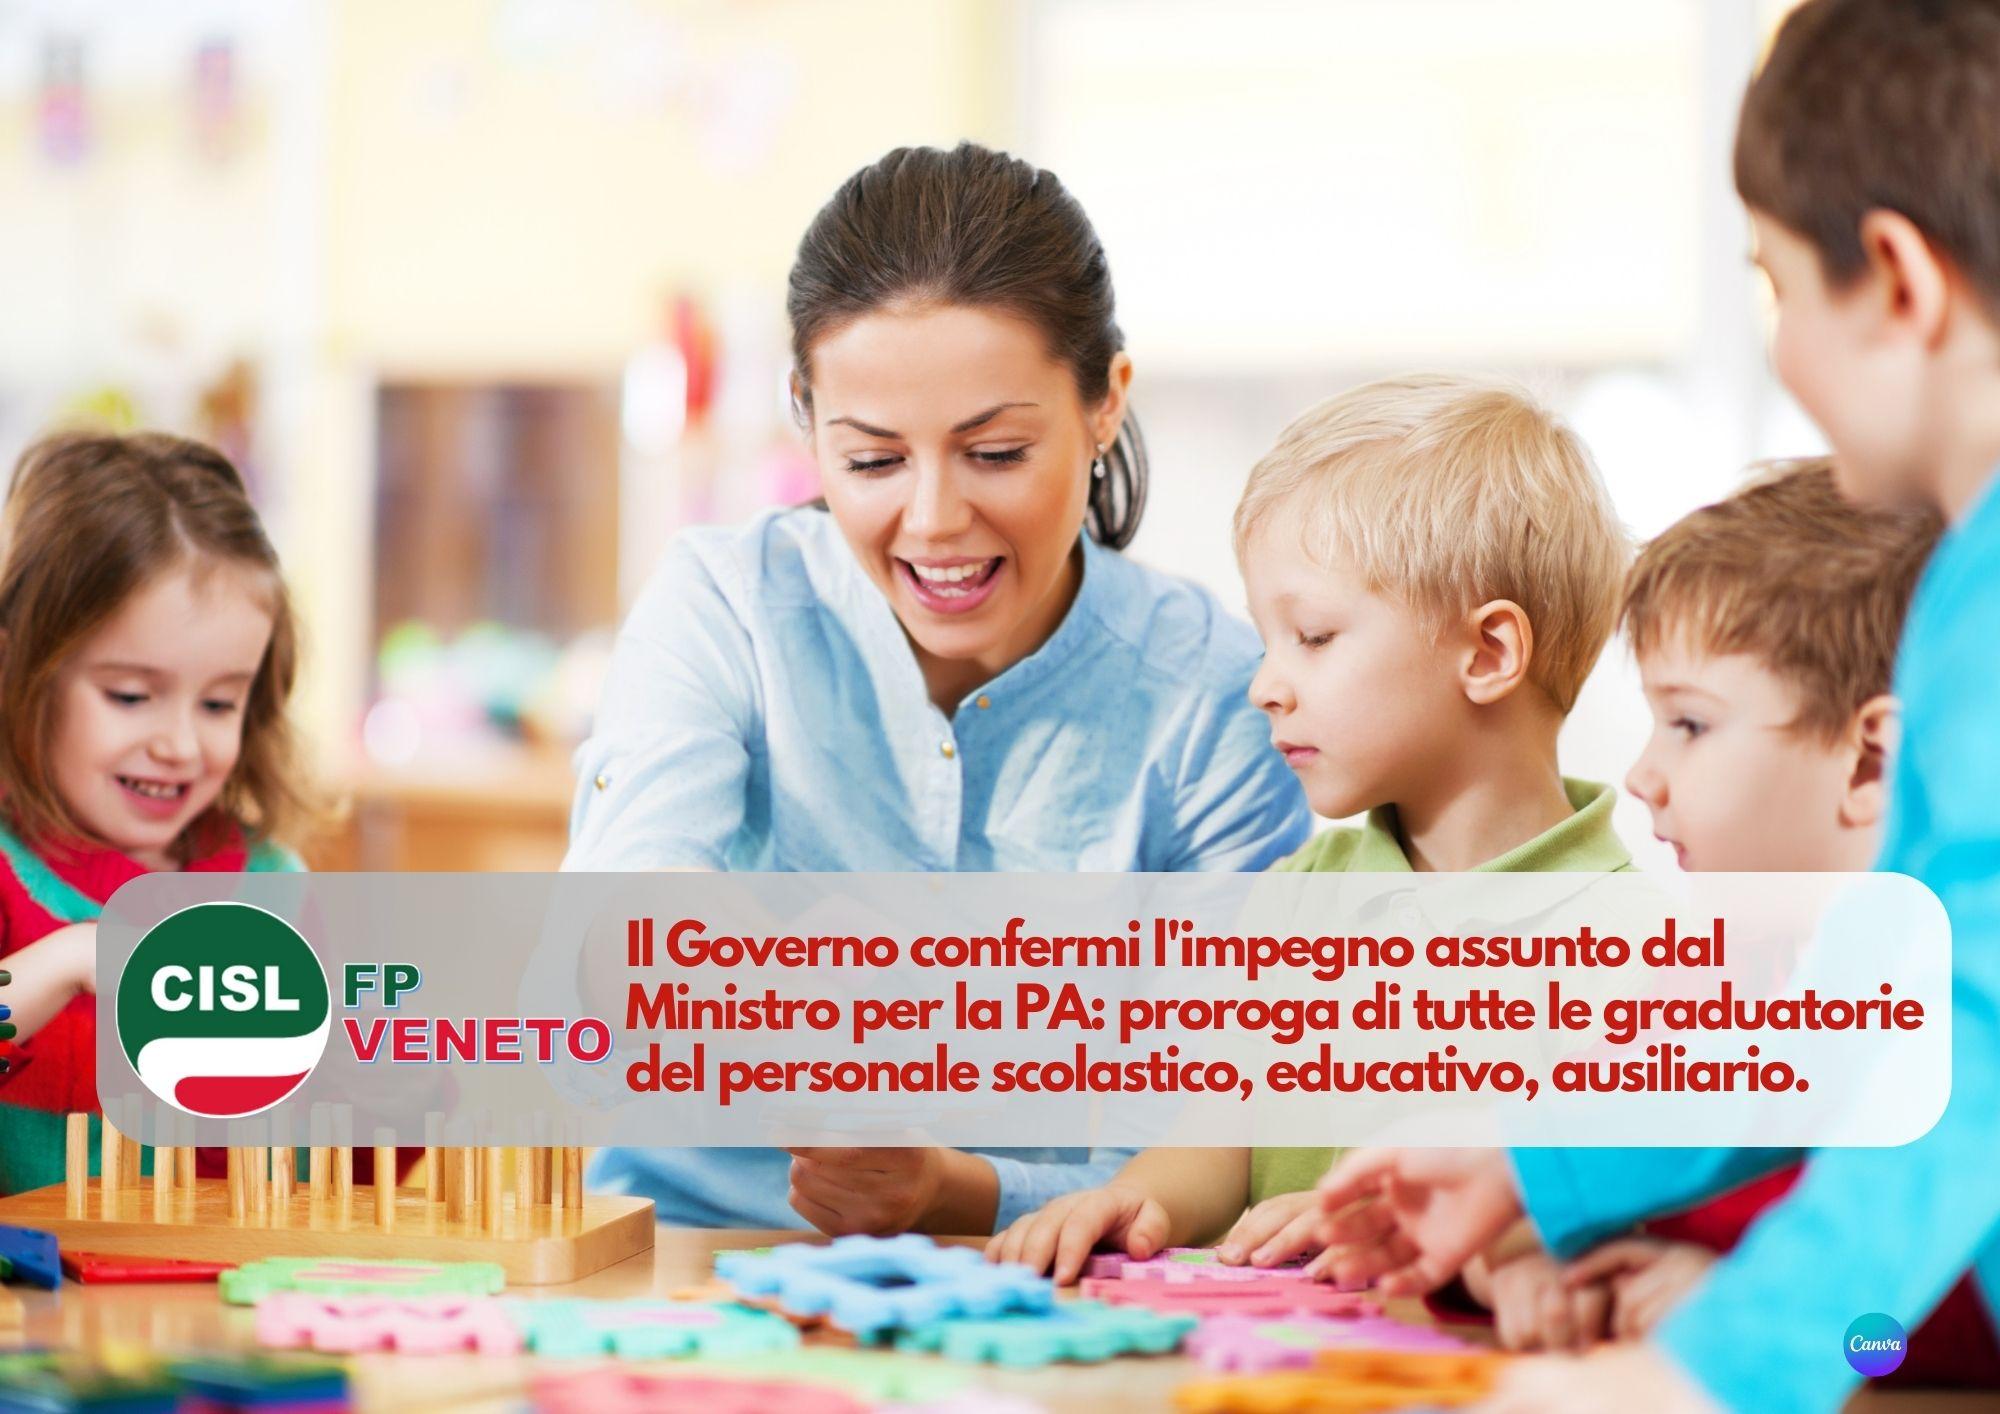 CISL FP Veneto. Il Governo confermi proroga graduatorie personale scolastico, educativo, ausiliario